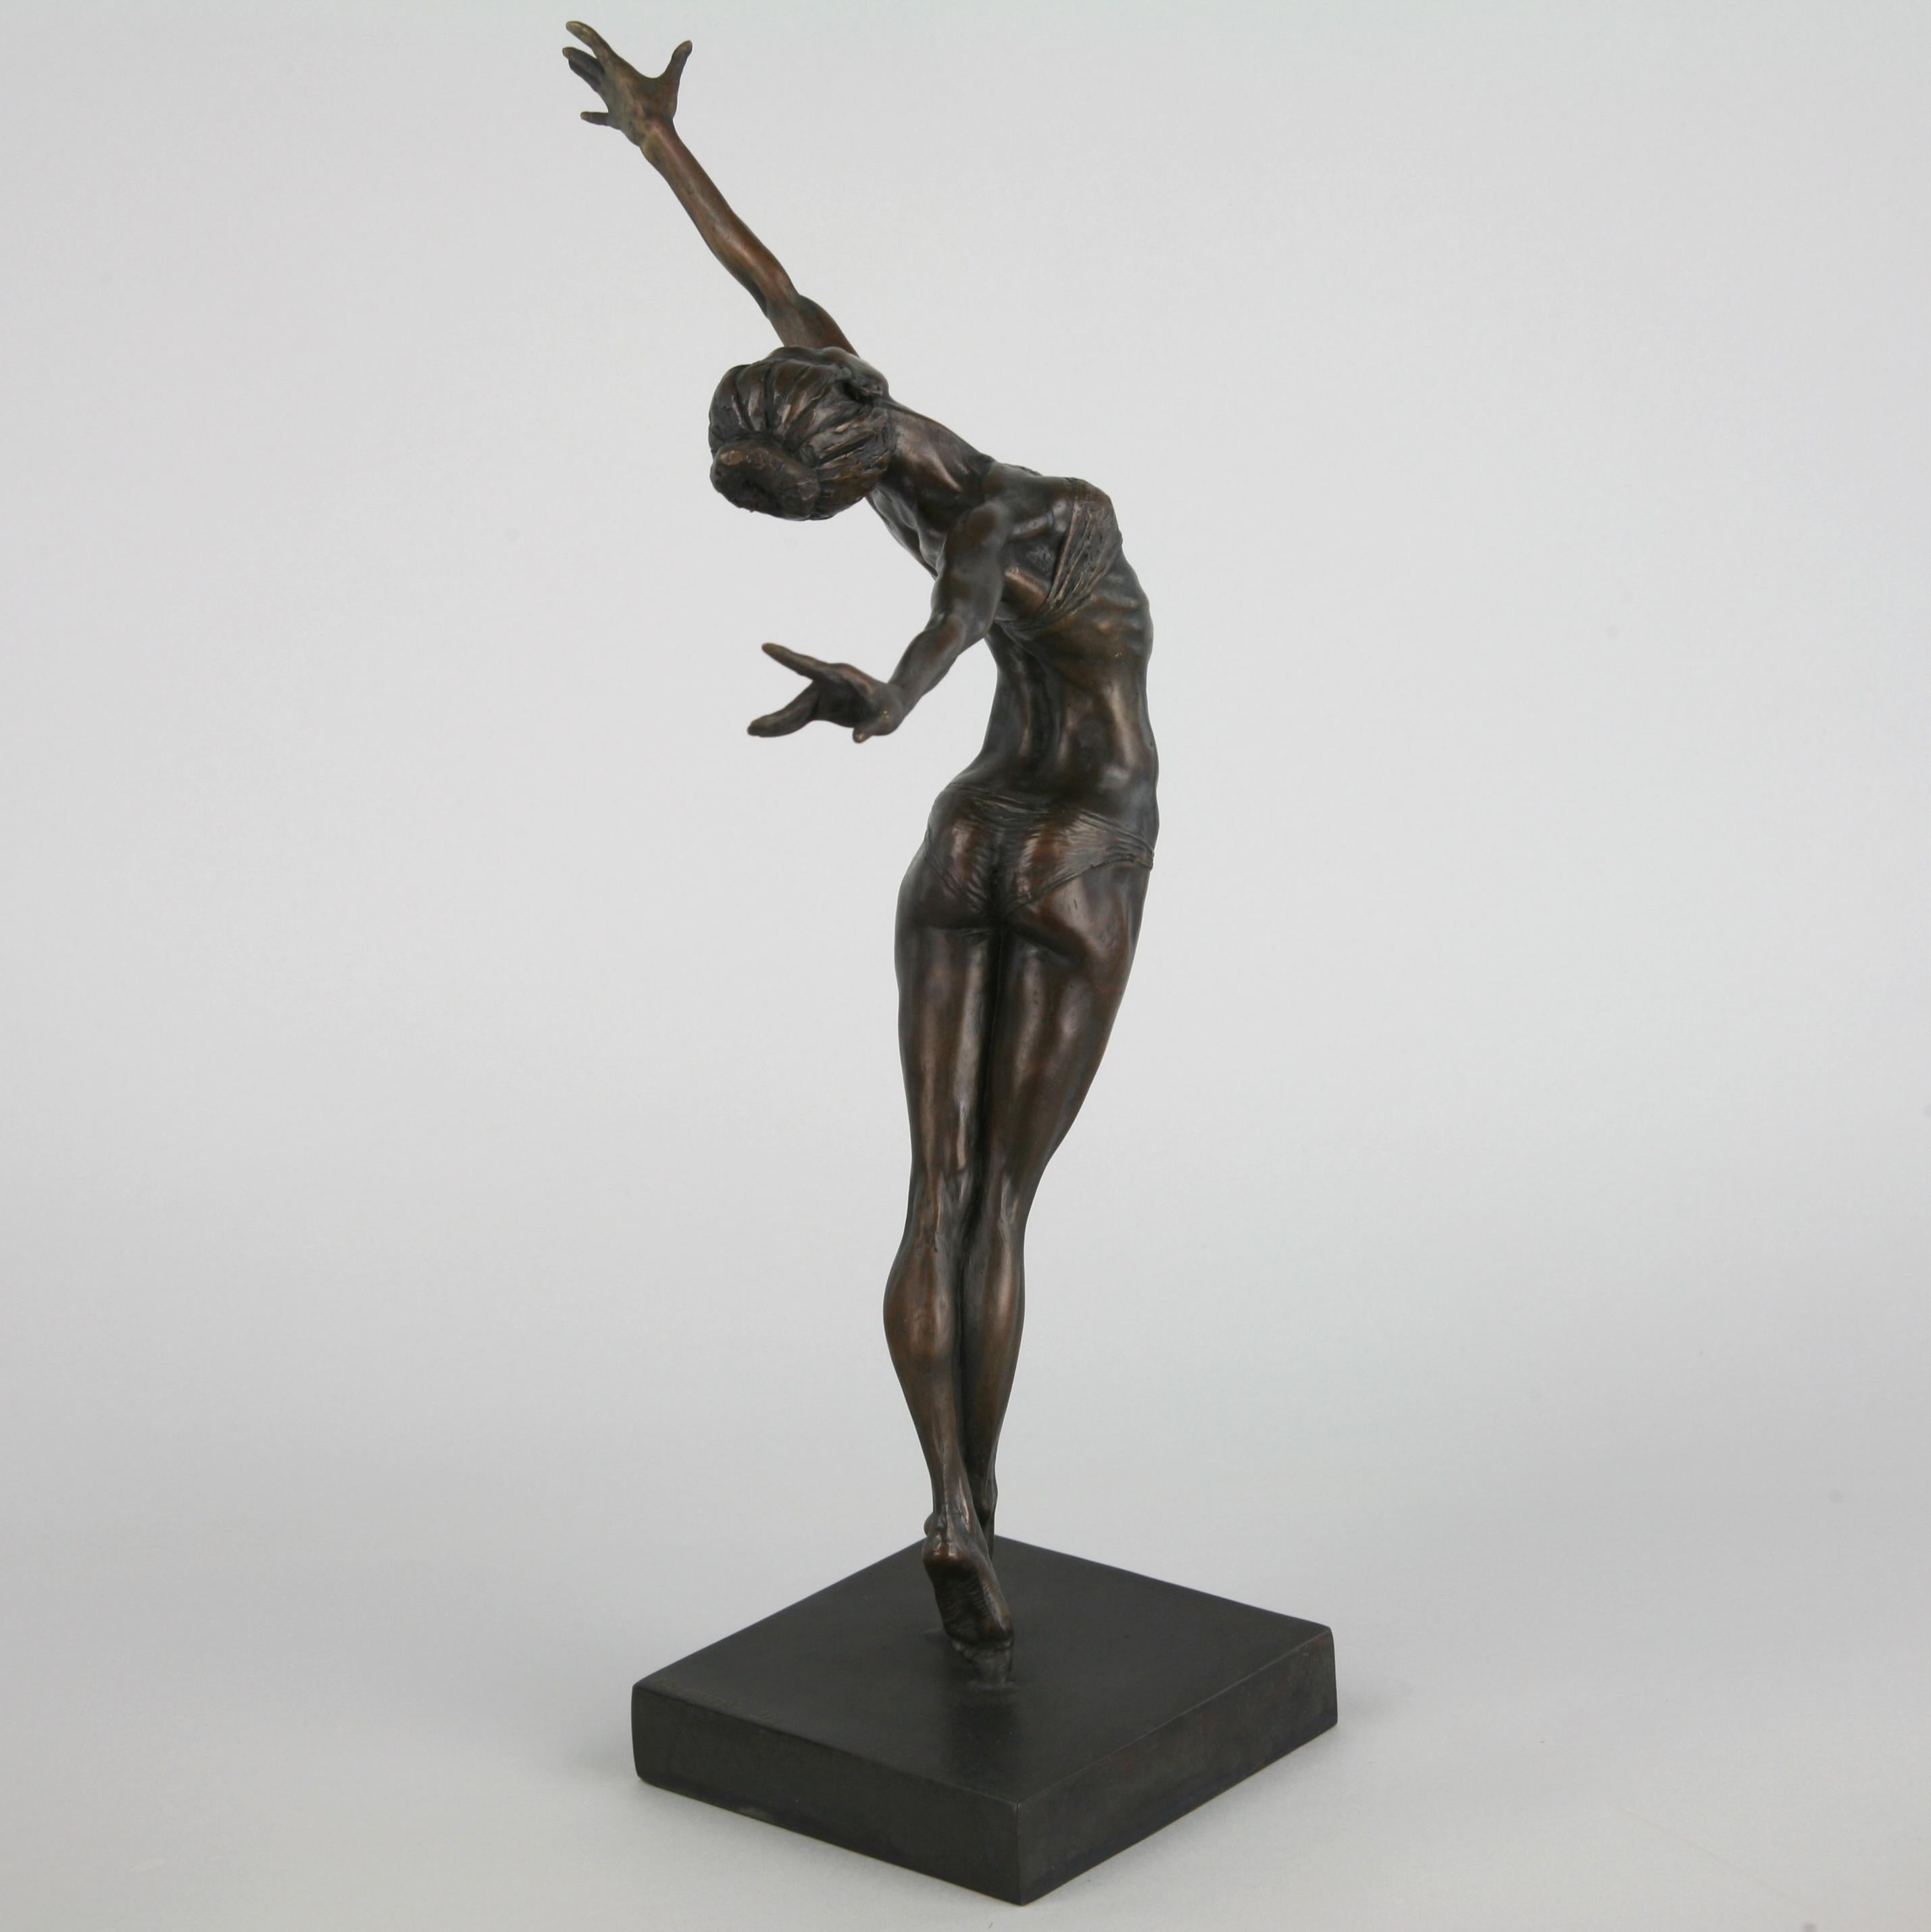 Pole Dancer-original nude figurative bronze sculpture-artwork-contemporary Art For Sale 2